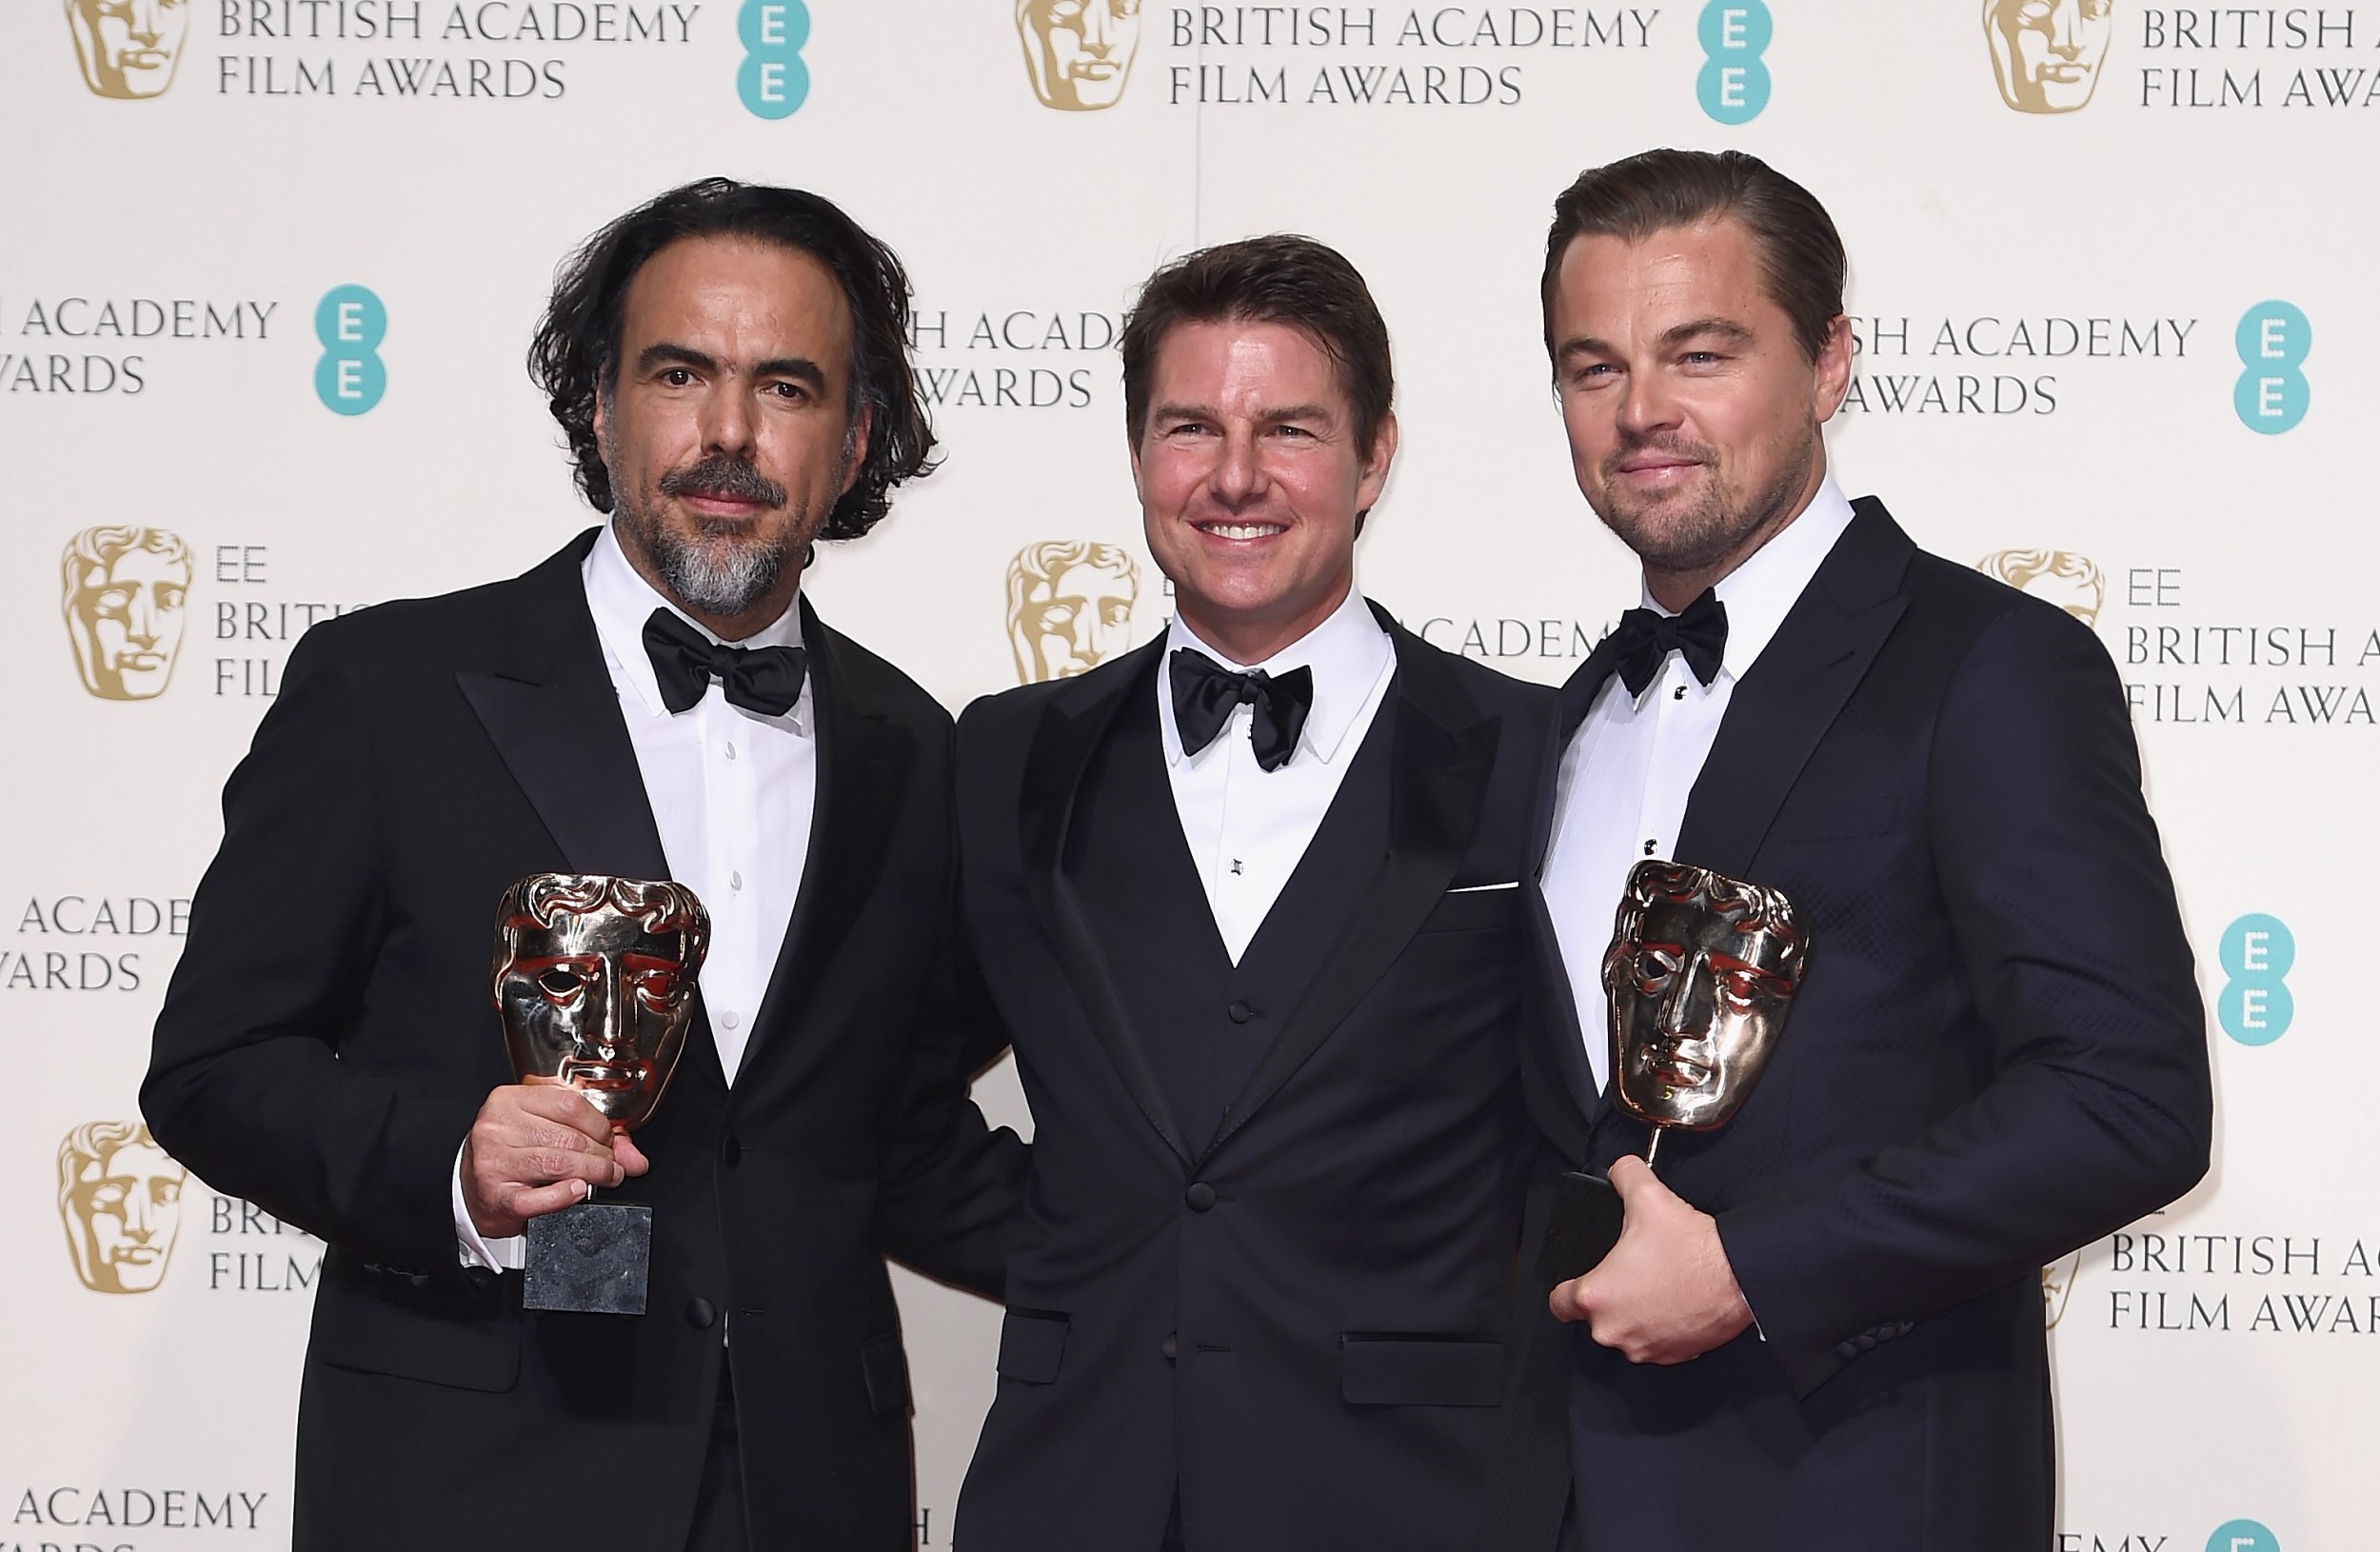 Alejandro Inarritu and Leonardo DiCaprio show off their awards with Tom Cruise.